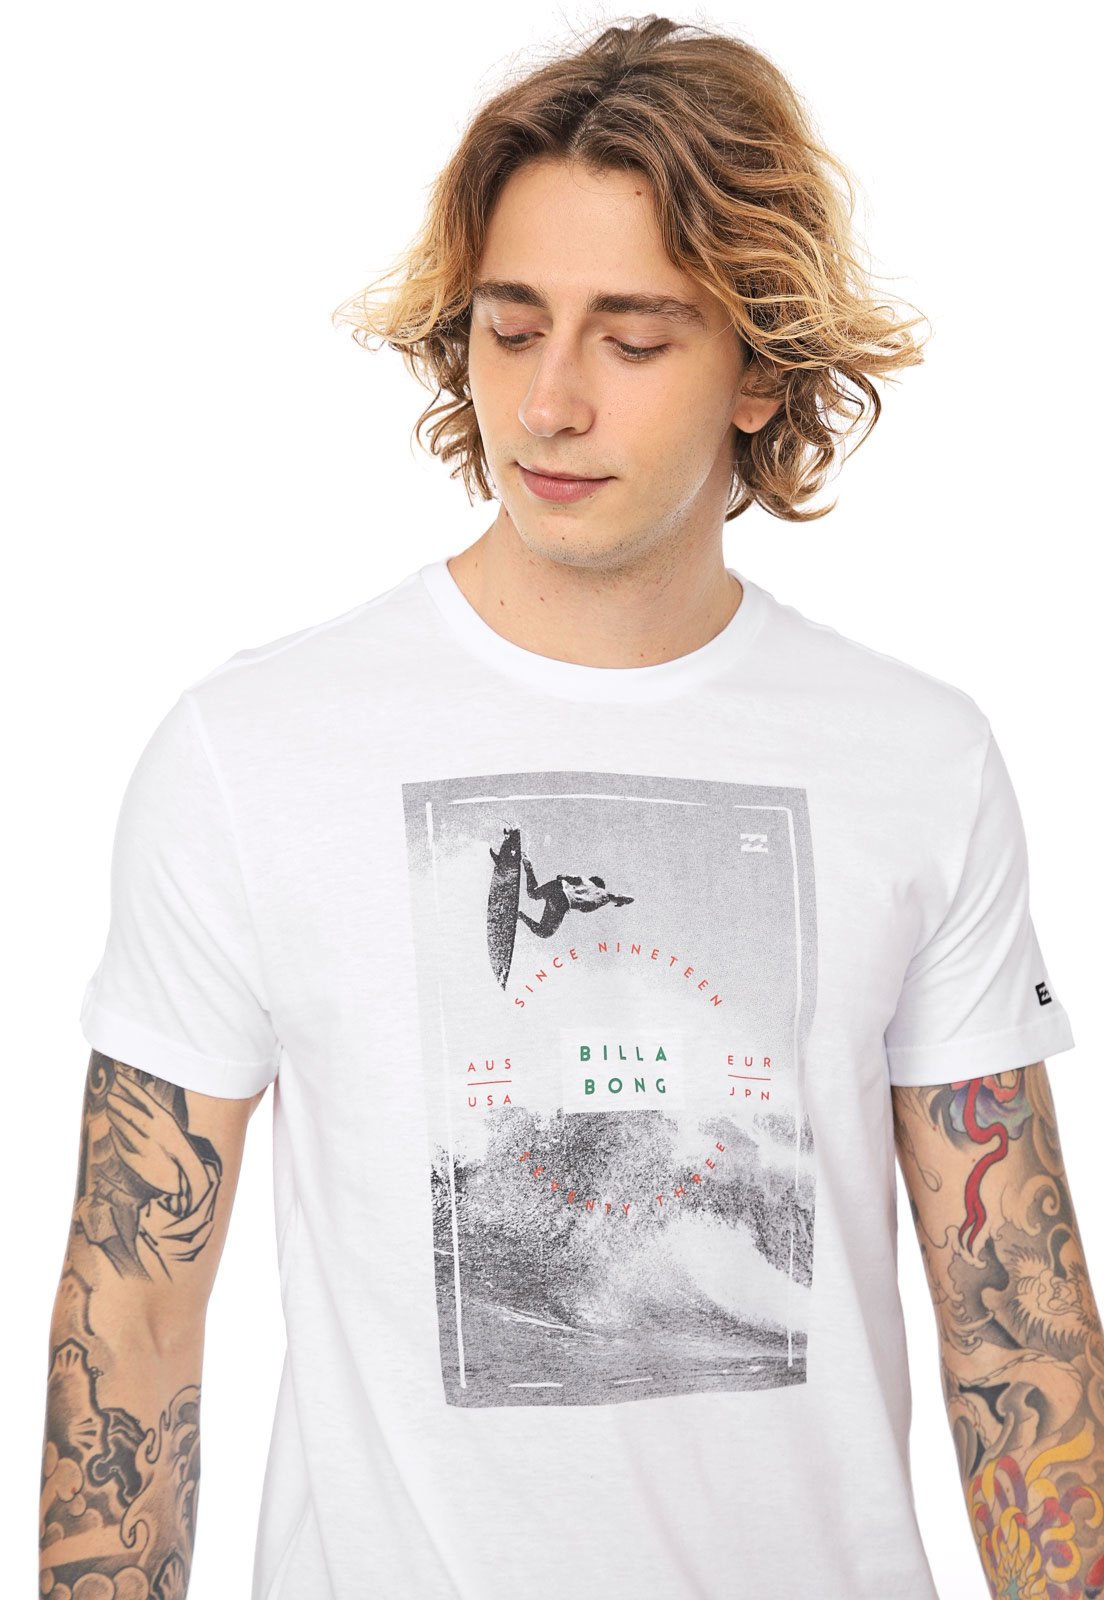 Reflection Monday Moist Camiseta Billabong Italo Branca - Compre Agora | Dafiti Brasil